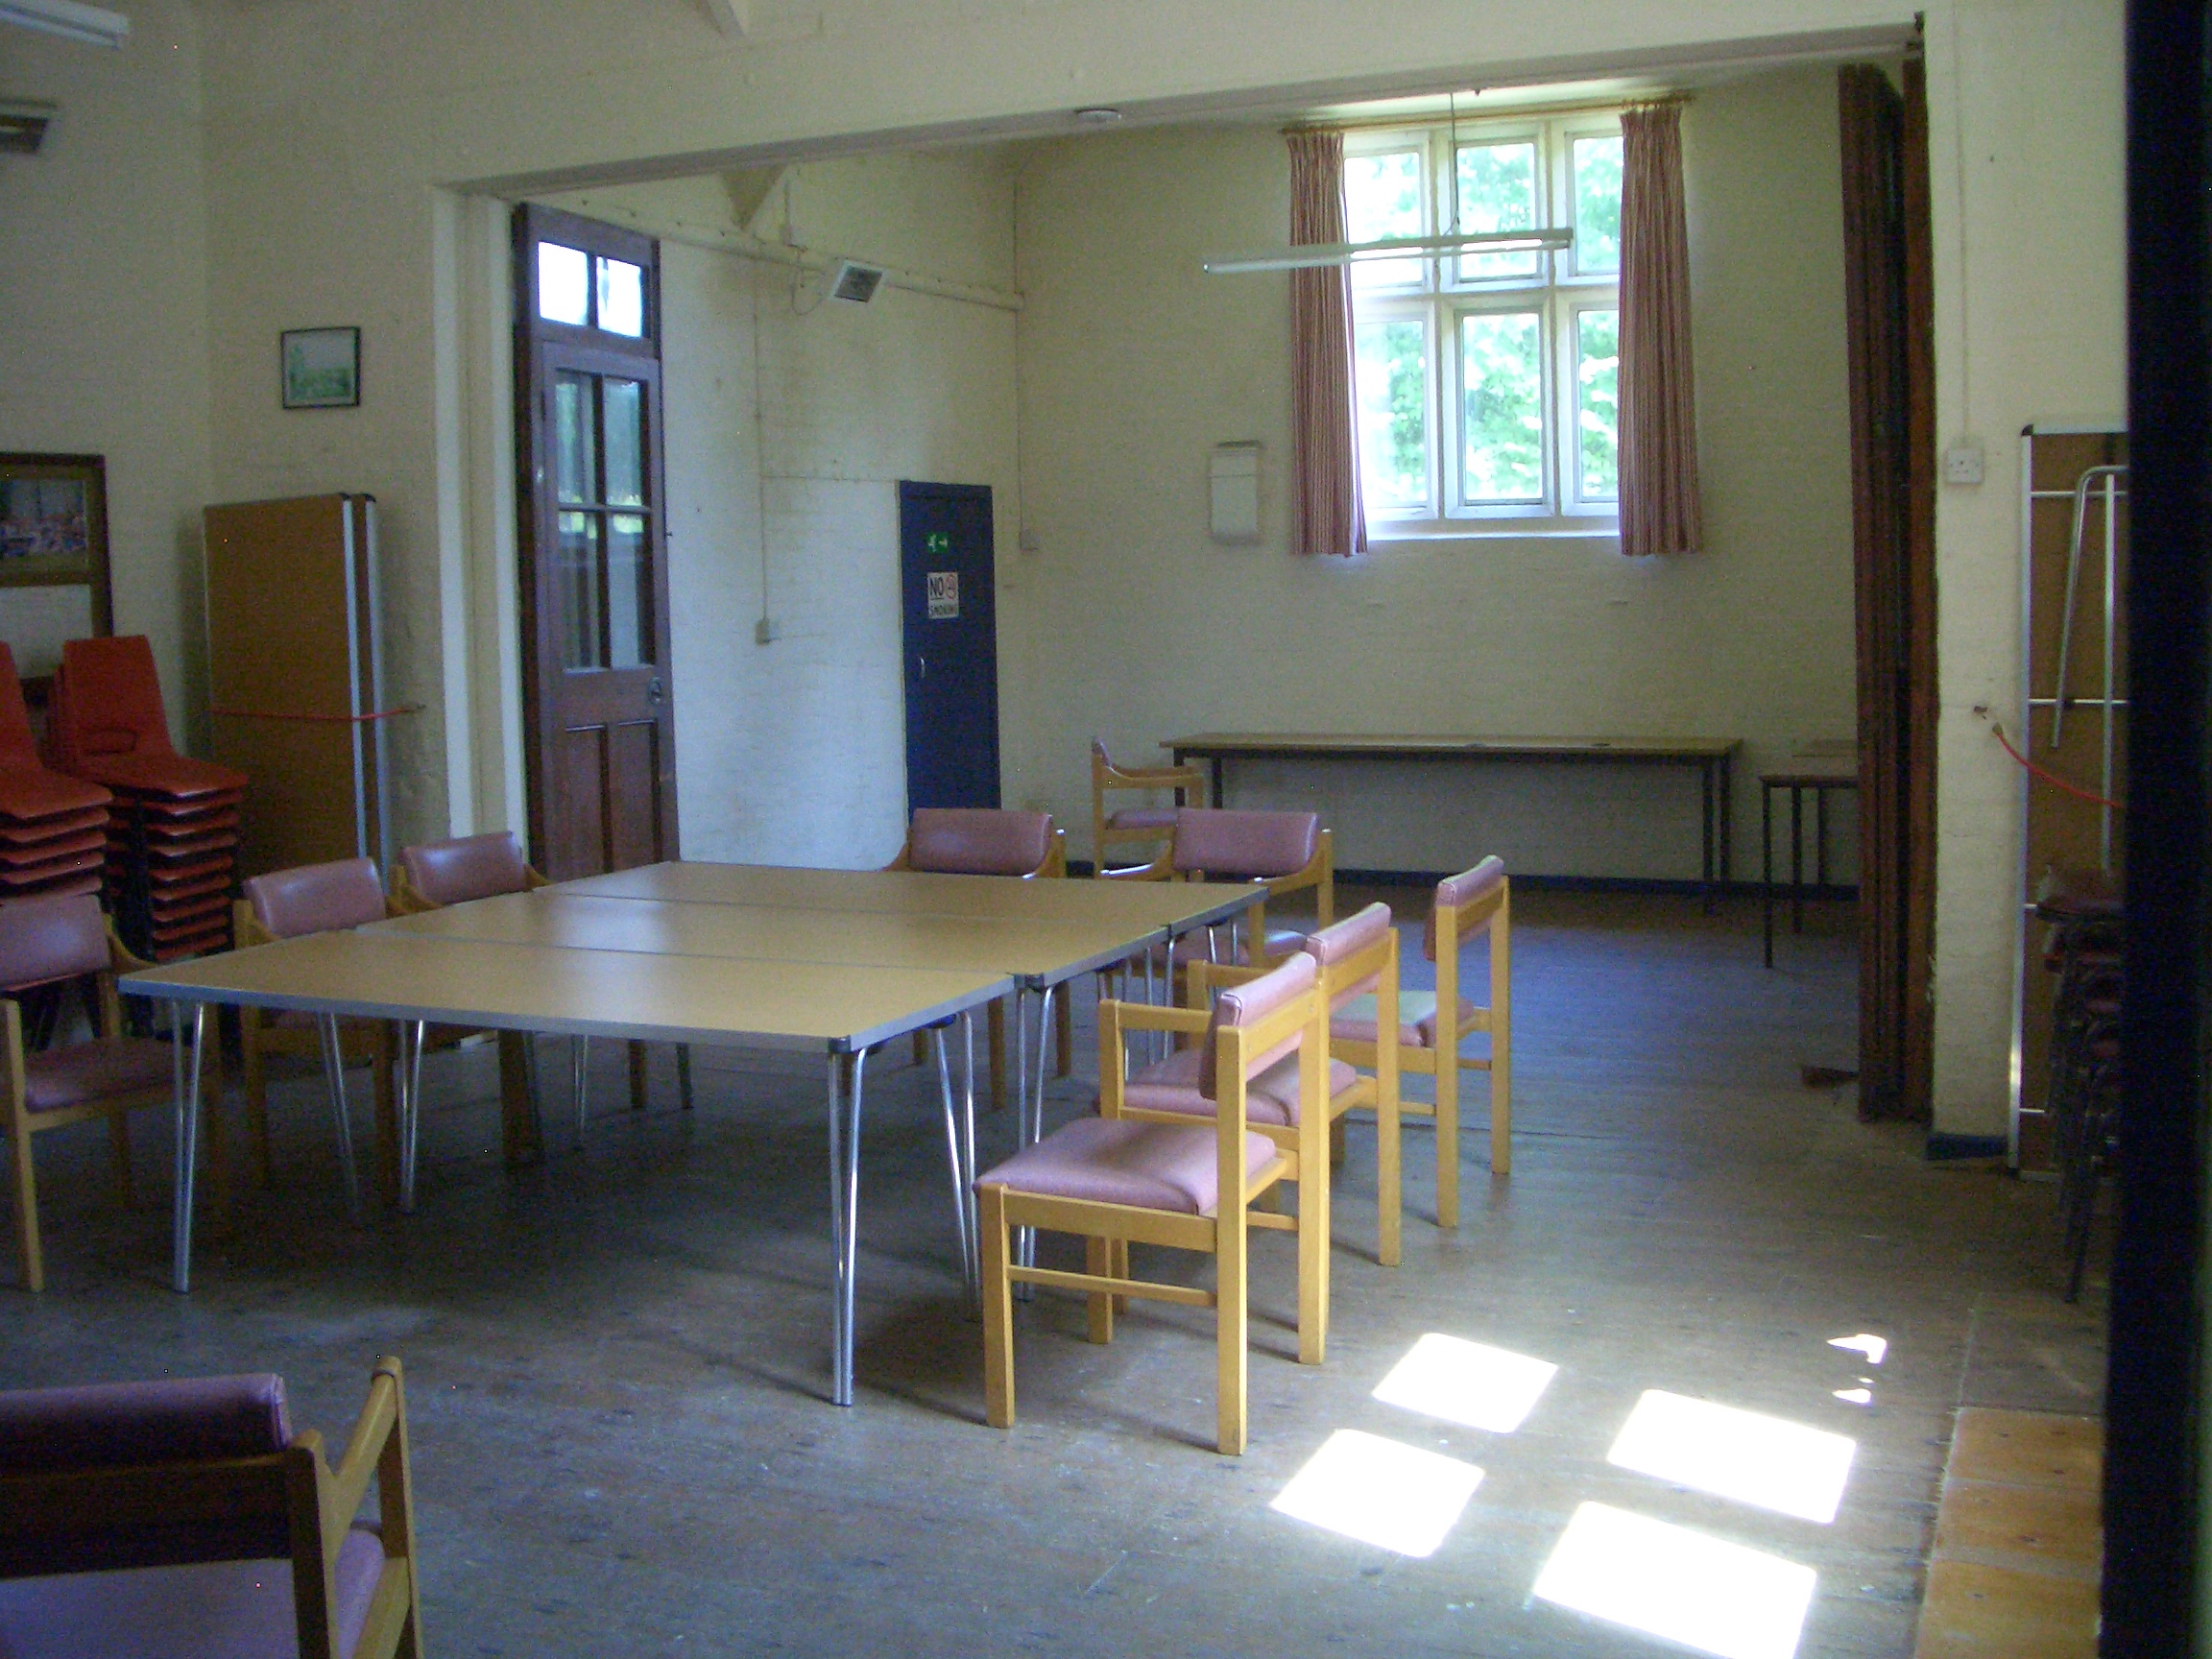 Sedgehill Village Hall